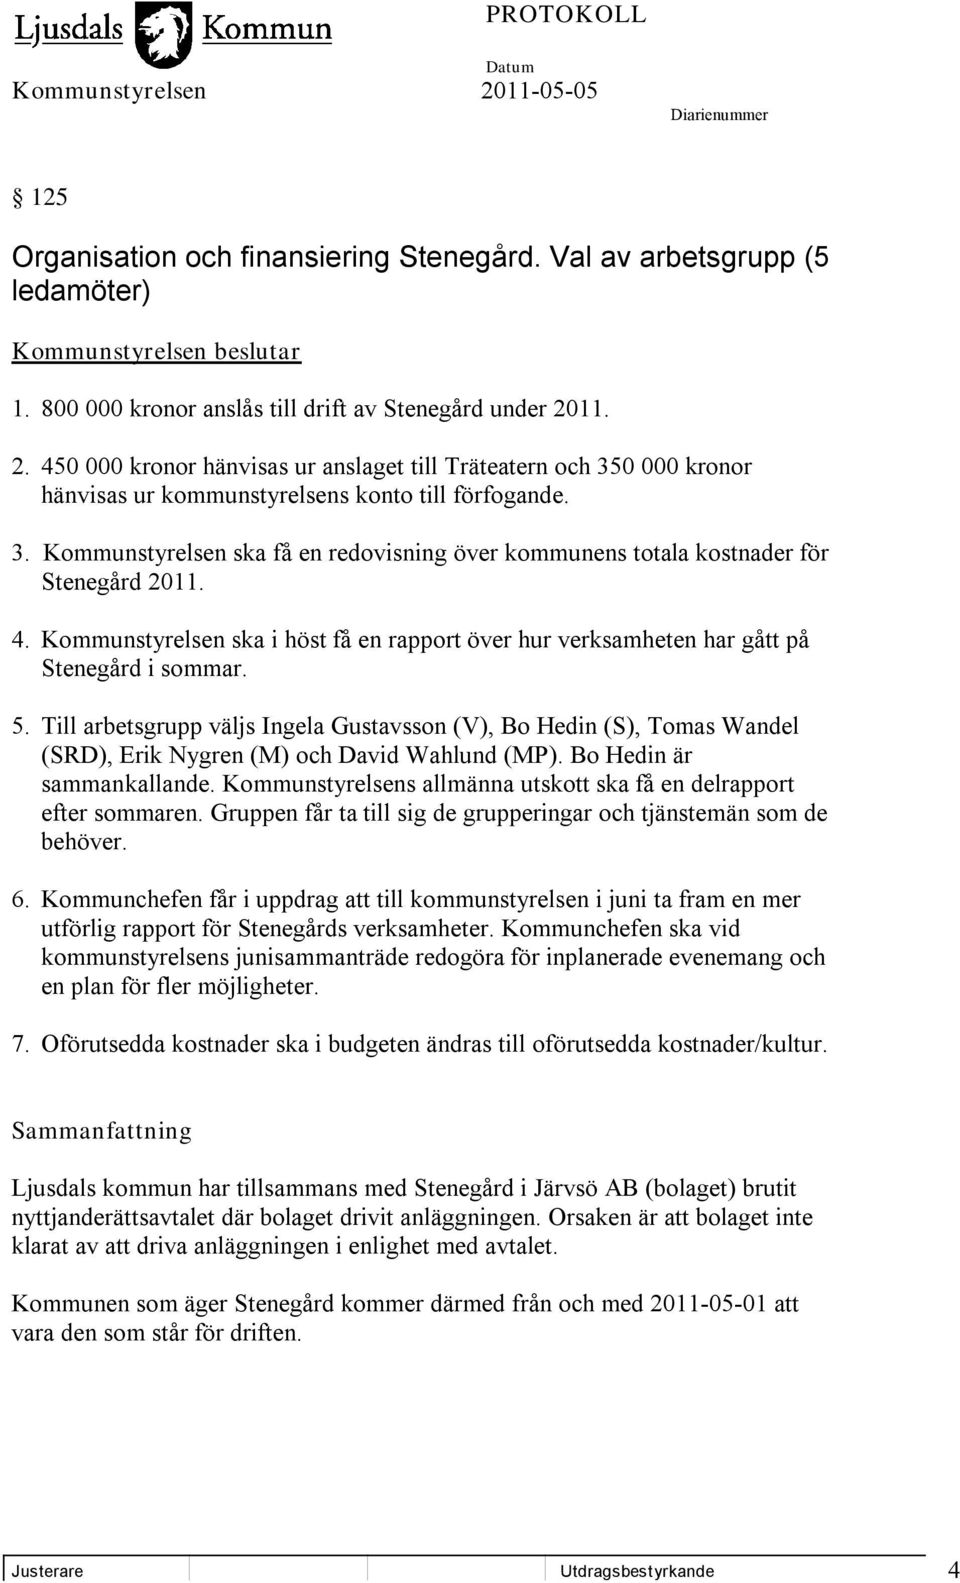 4. Kommunstyrelsen ska i höst få en rapport över hur verksamheten har gått på Stenegård i sommar. 5.